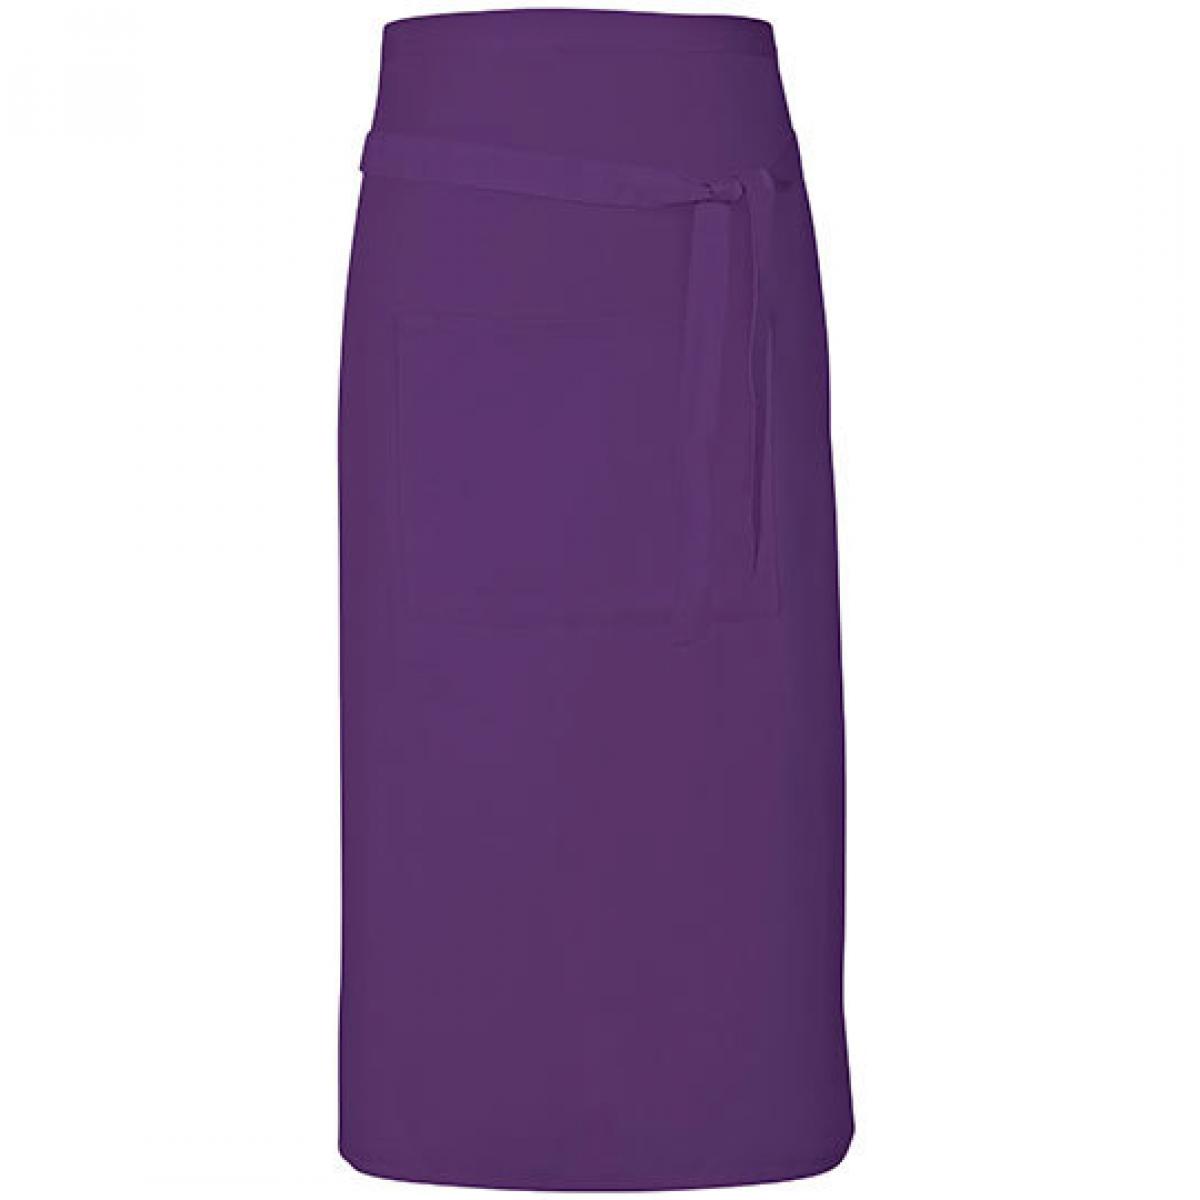 Hersteller: Link Kitchen Wear Herstellernummer: TS8090 Artikelbezeichnung: Terras Apron - 90 x 80 cm - Waschbar bis 60 °C Farbe: Purple (ca. Pantone 269)